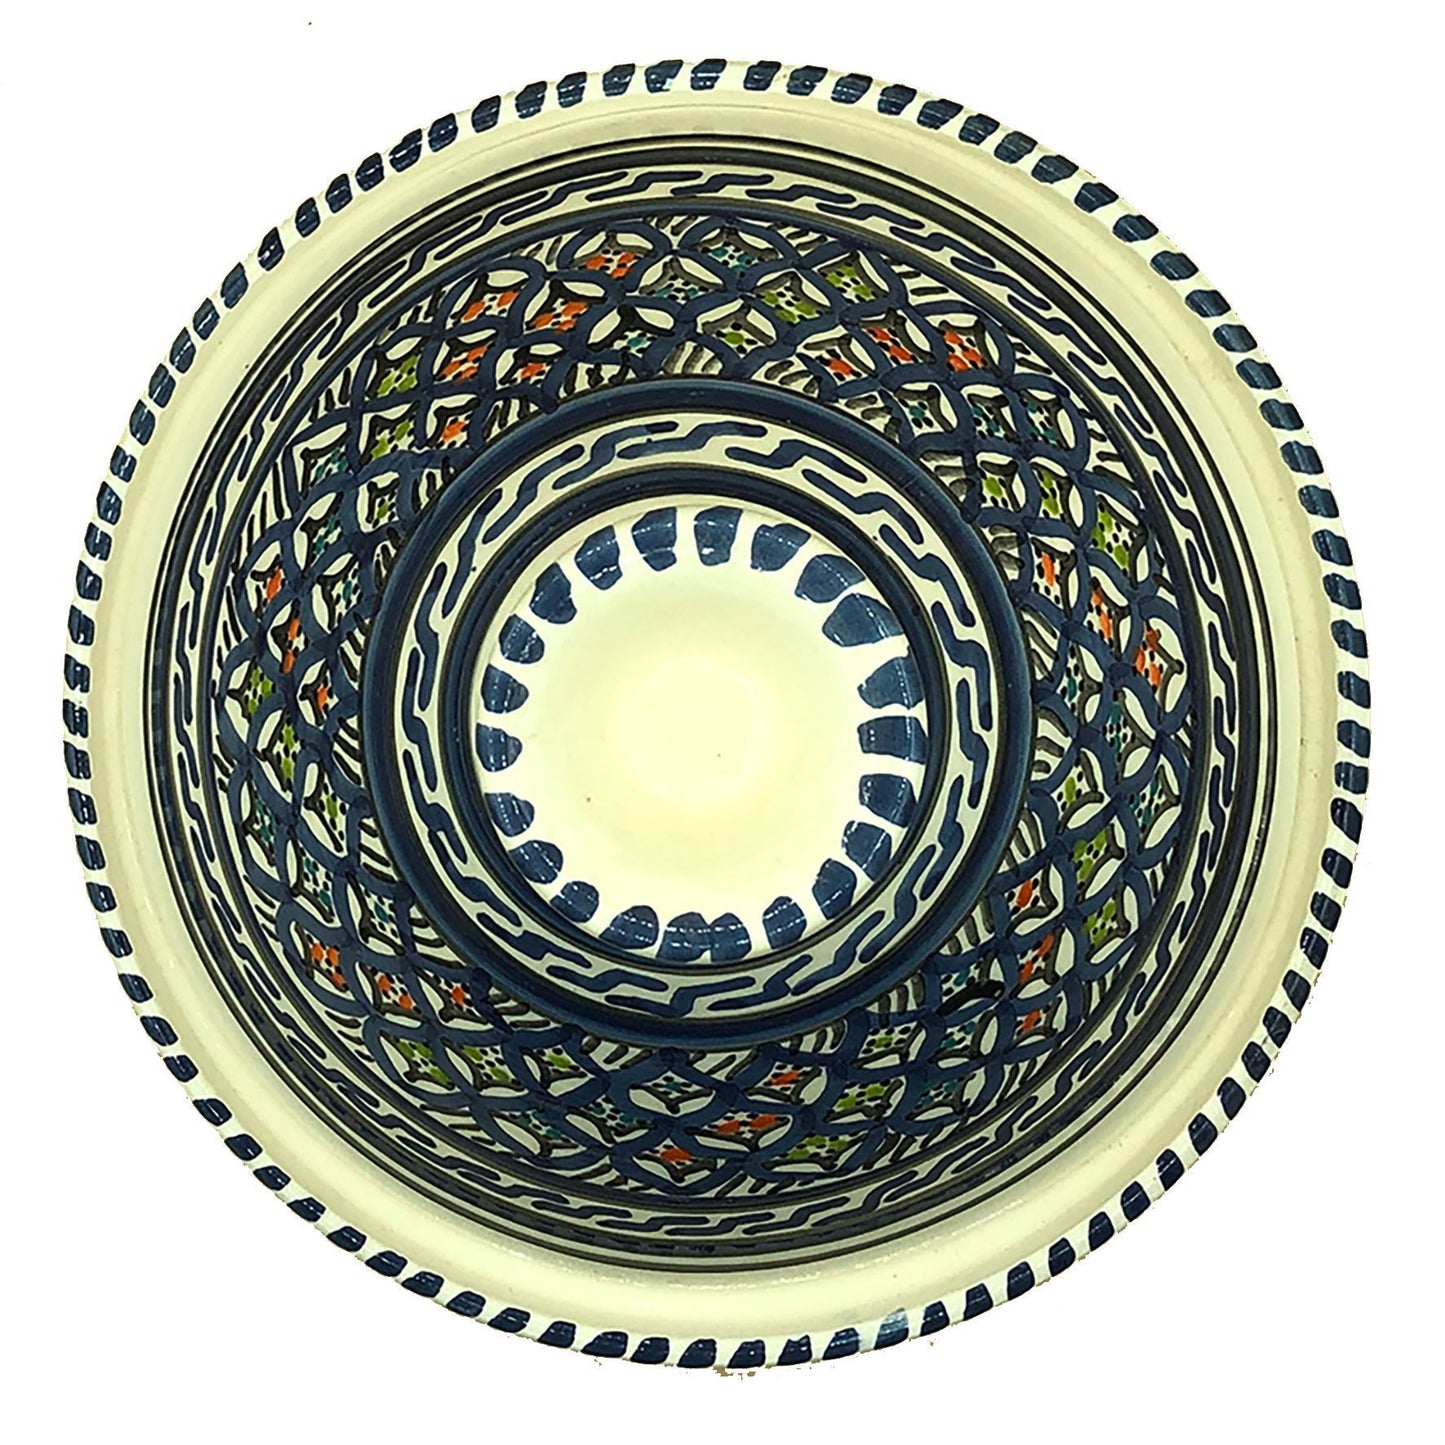 Elite Decoratieve Tajine Marokkaans Keramiek Tunesisch Etnisch Groot 0311201100